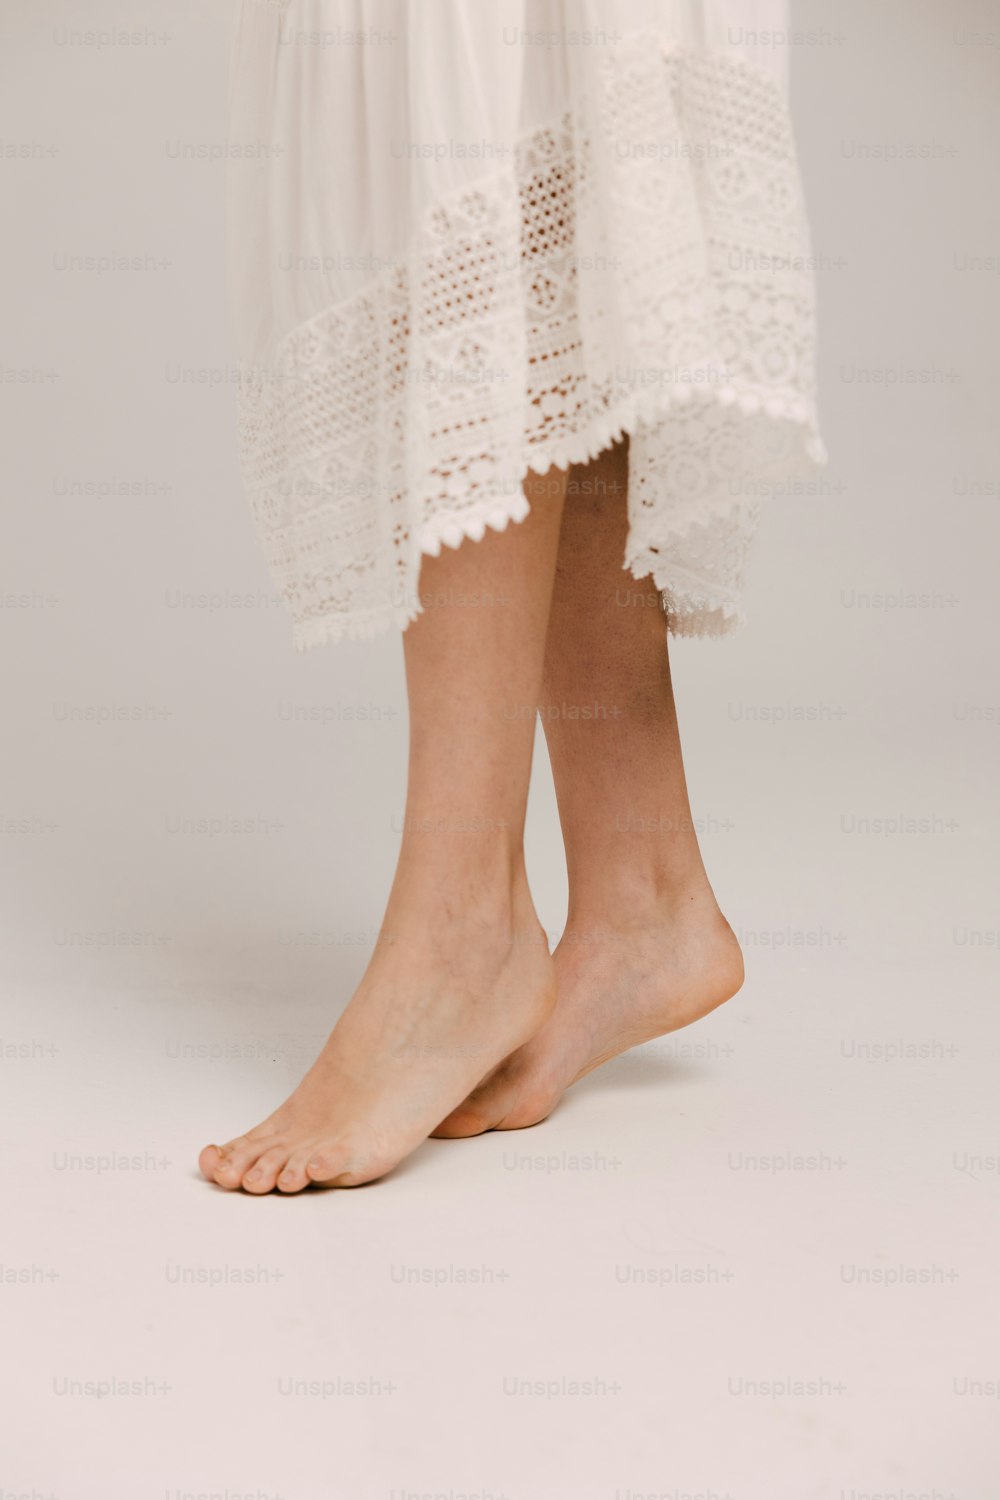 un primo piano delle gambe di una persona che indossa un vestito bianco